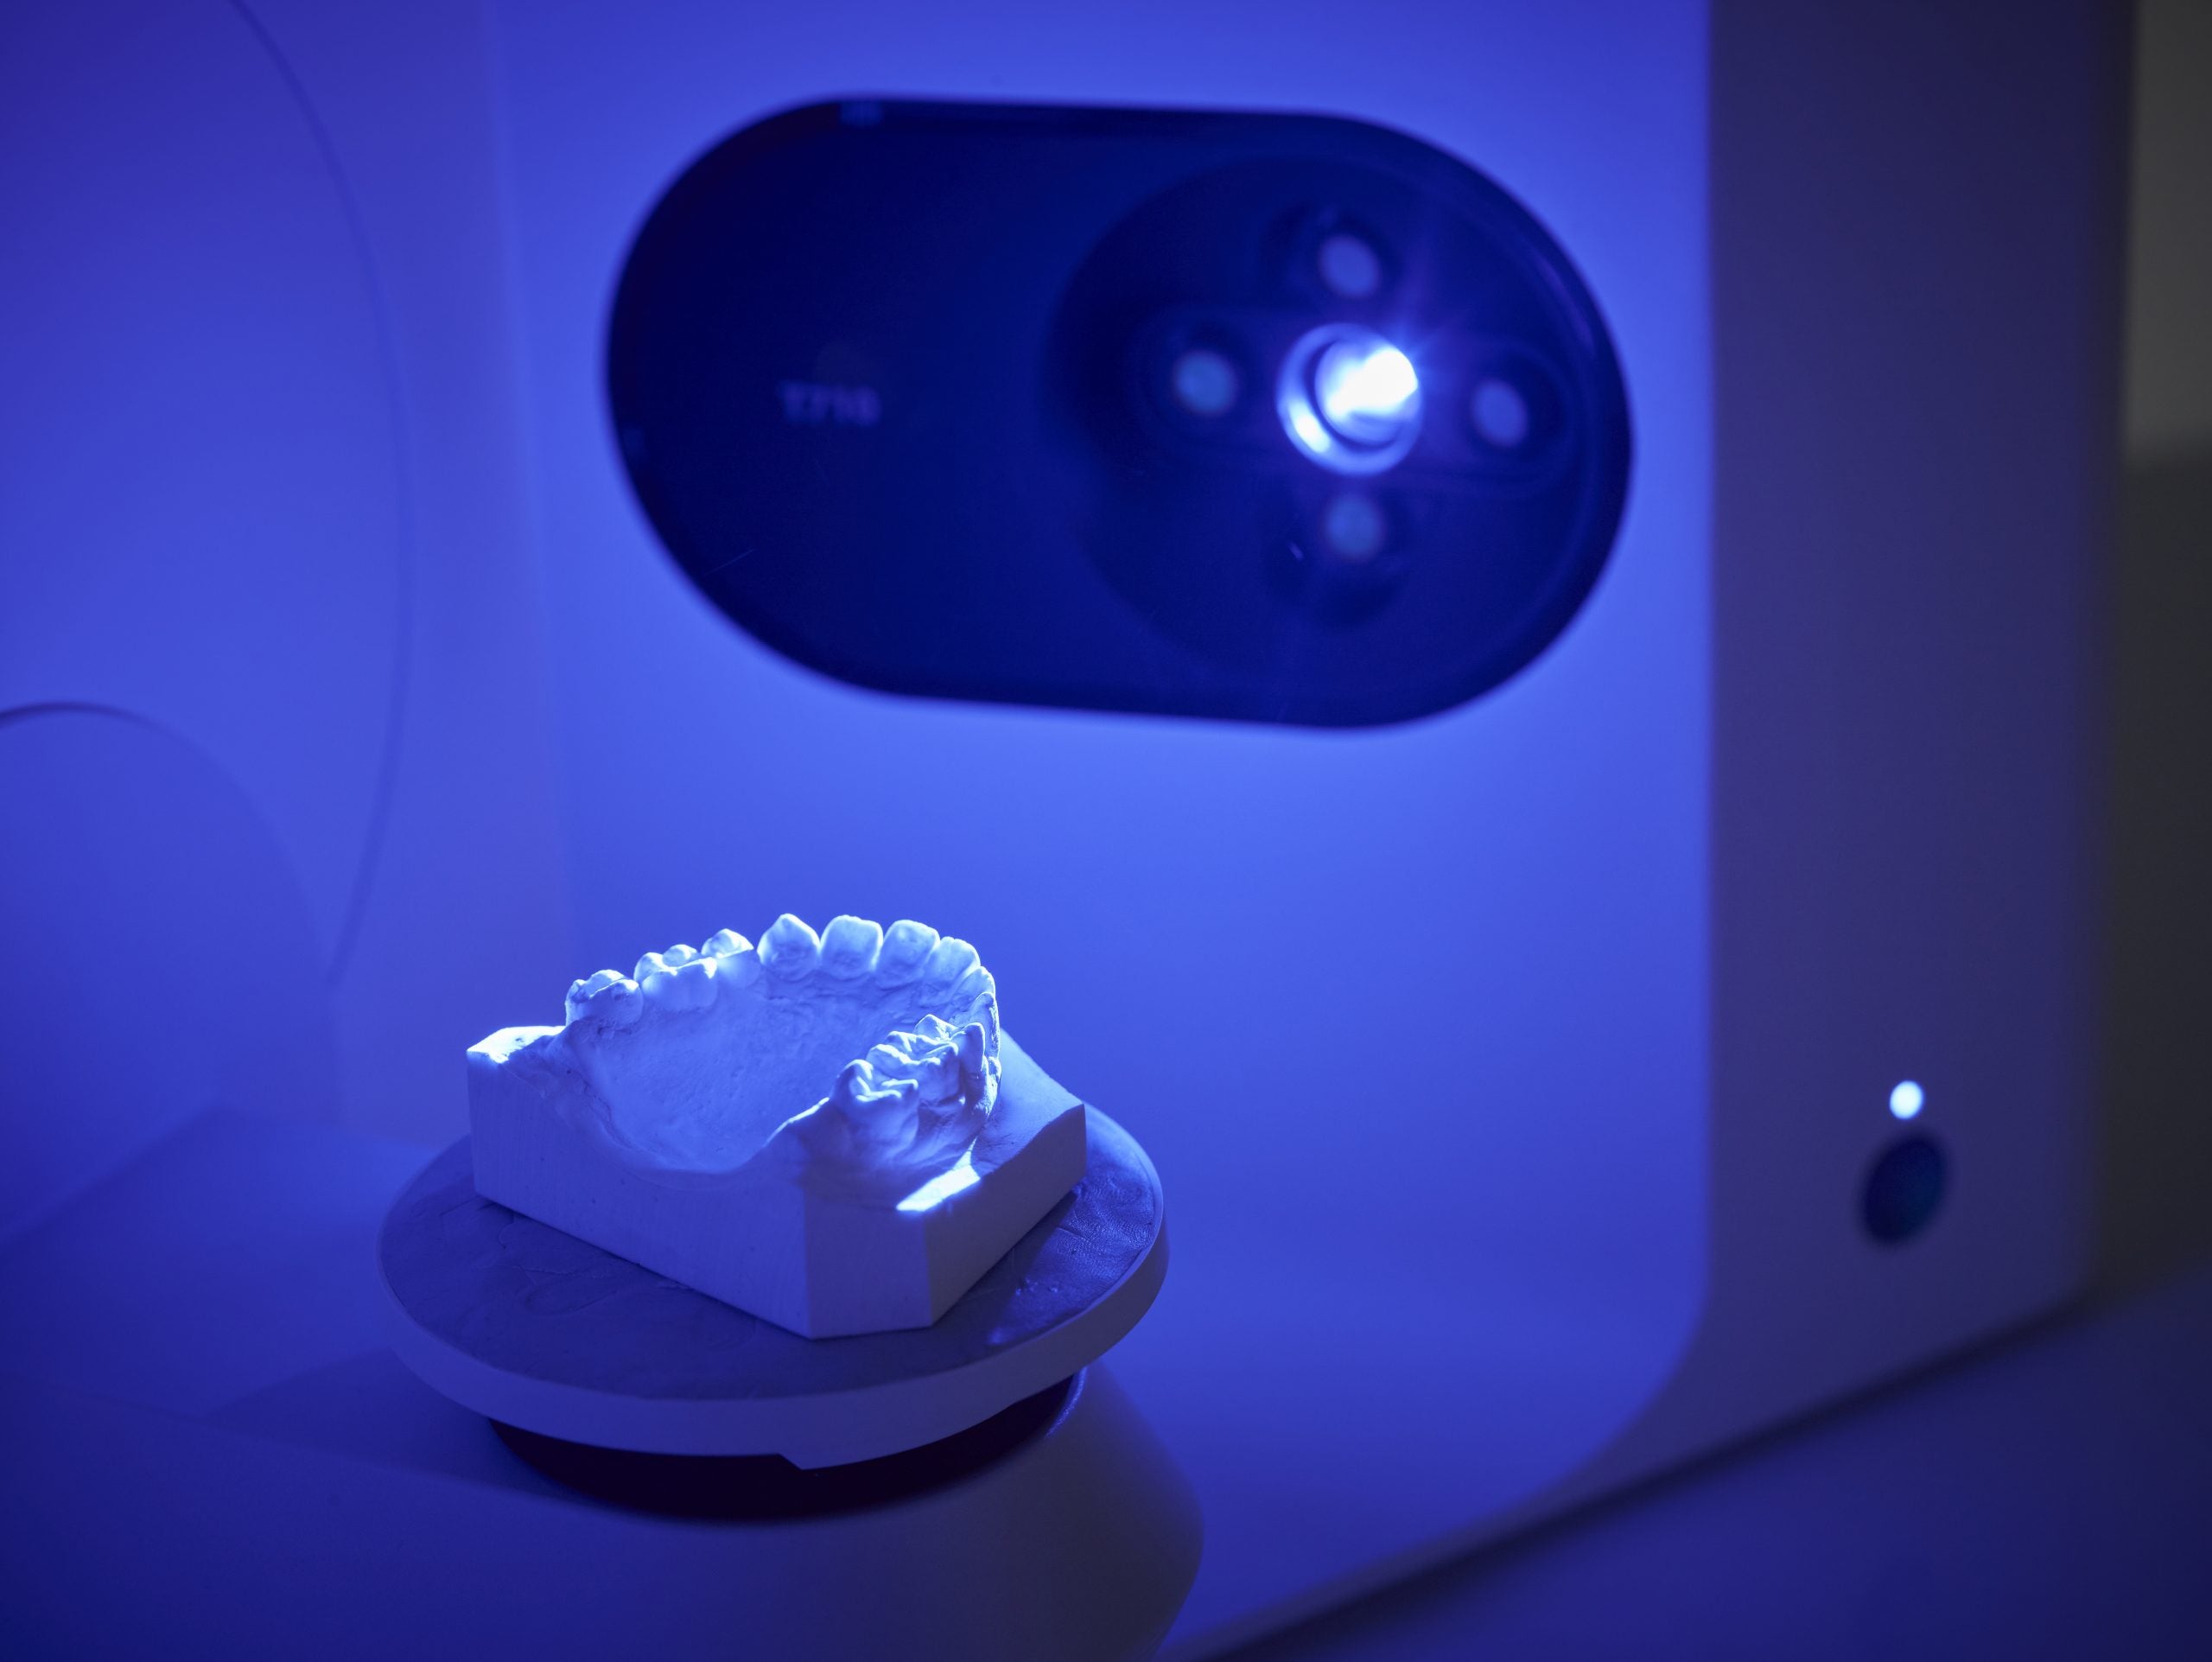 Medit T-710 Desktop Scanner for Labs and Dentists